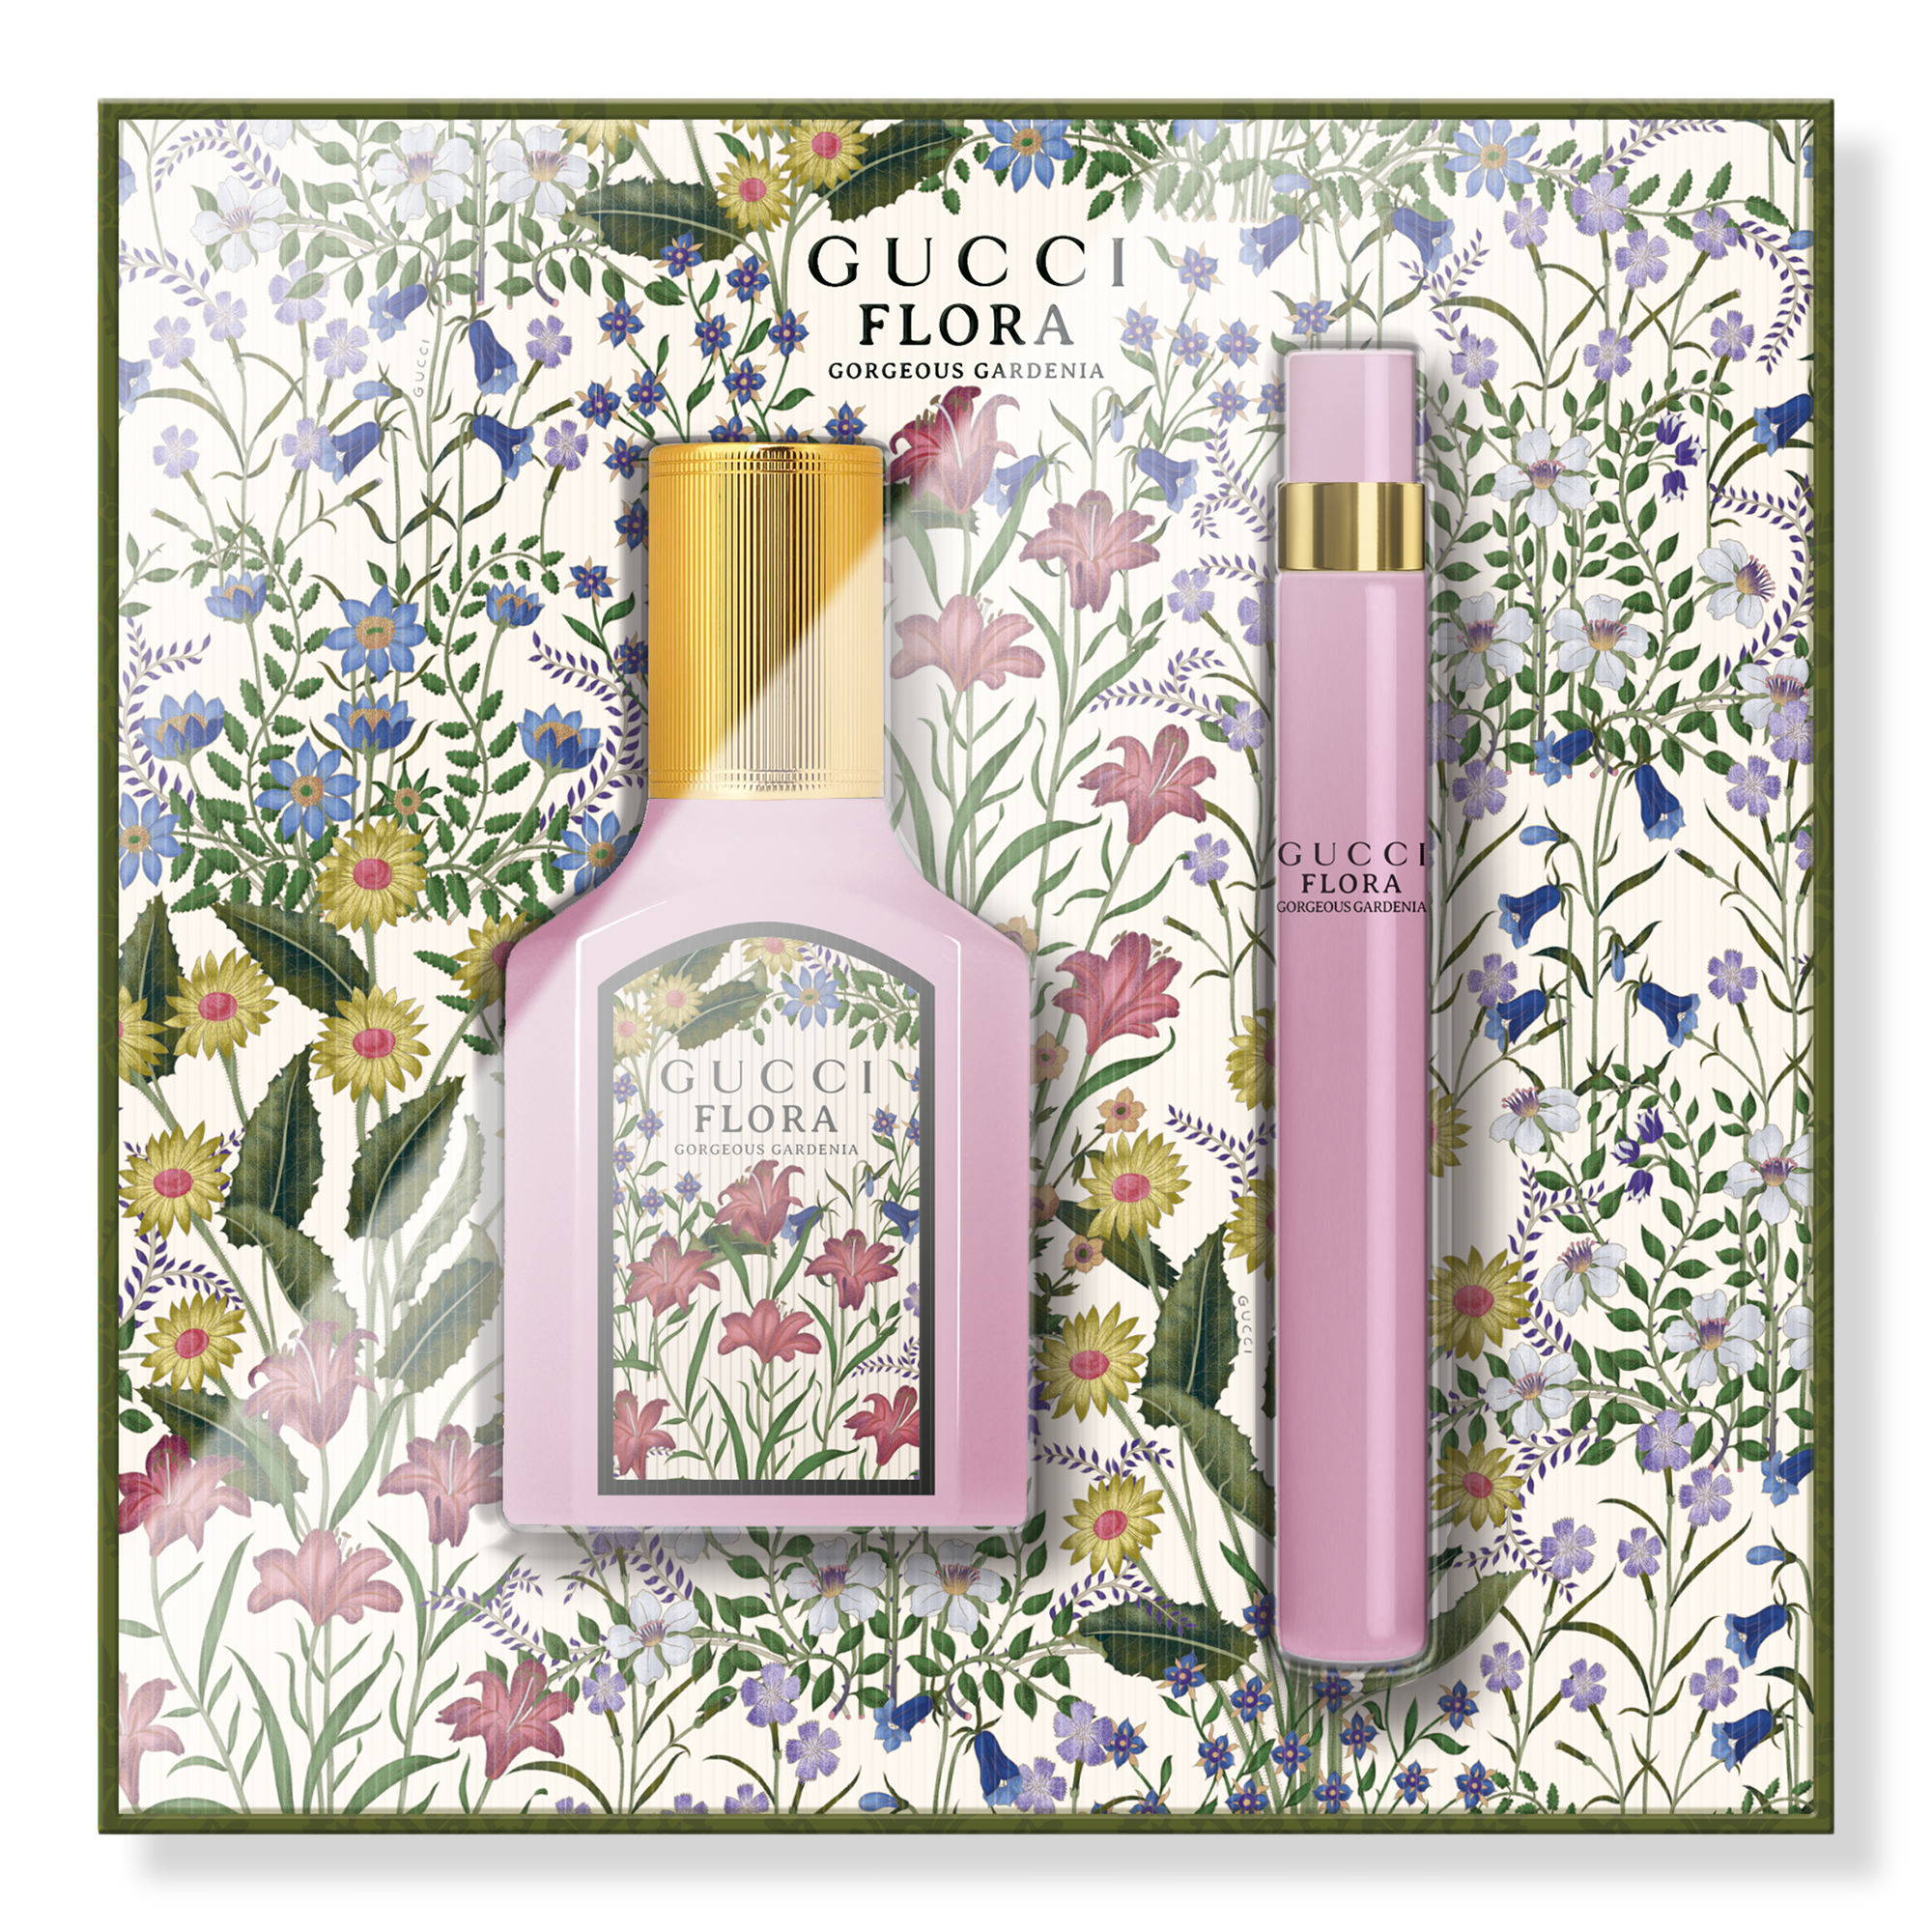 Flora Gorgeous Gardenia Eau de Parfum Holiday pic picture